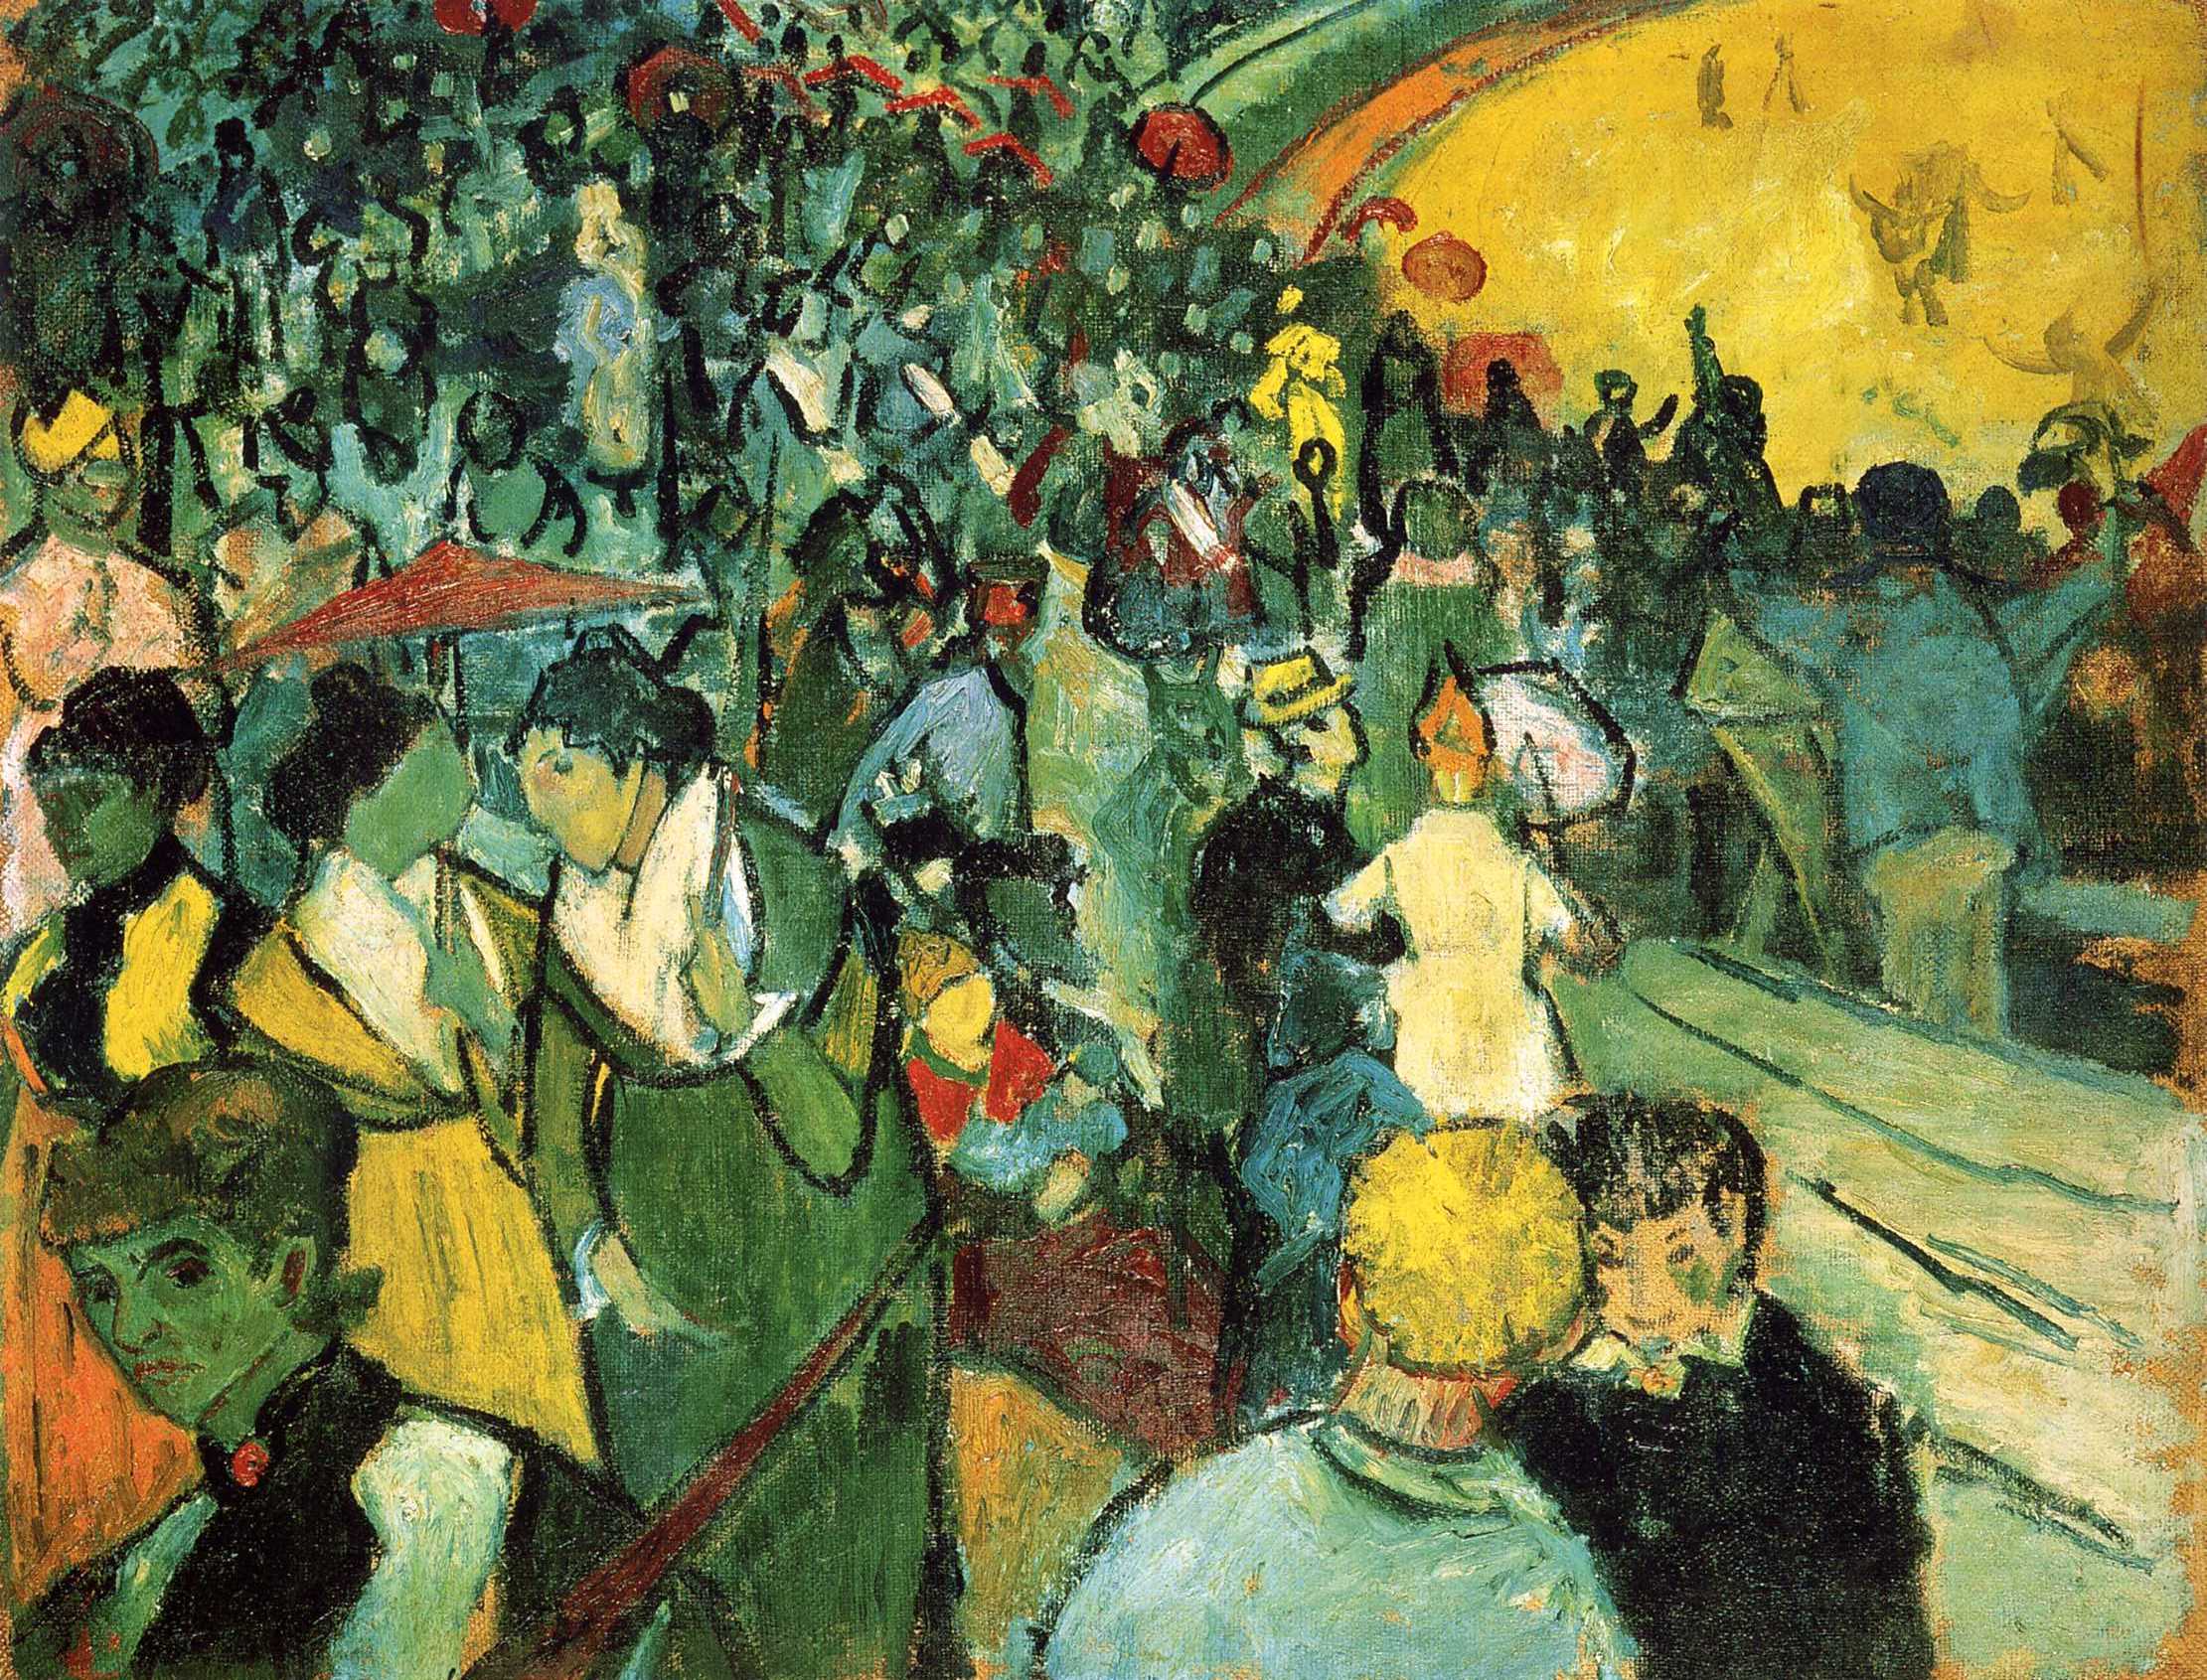 Zuschauer in der Arena von Arles by Vincent van Gogh - 1888 - 73 x 92 cm Hermitage Museum